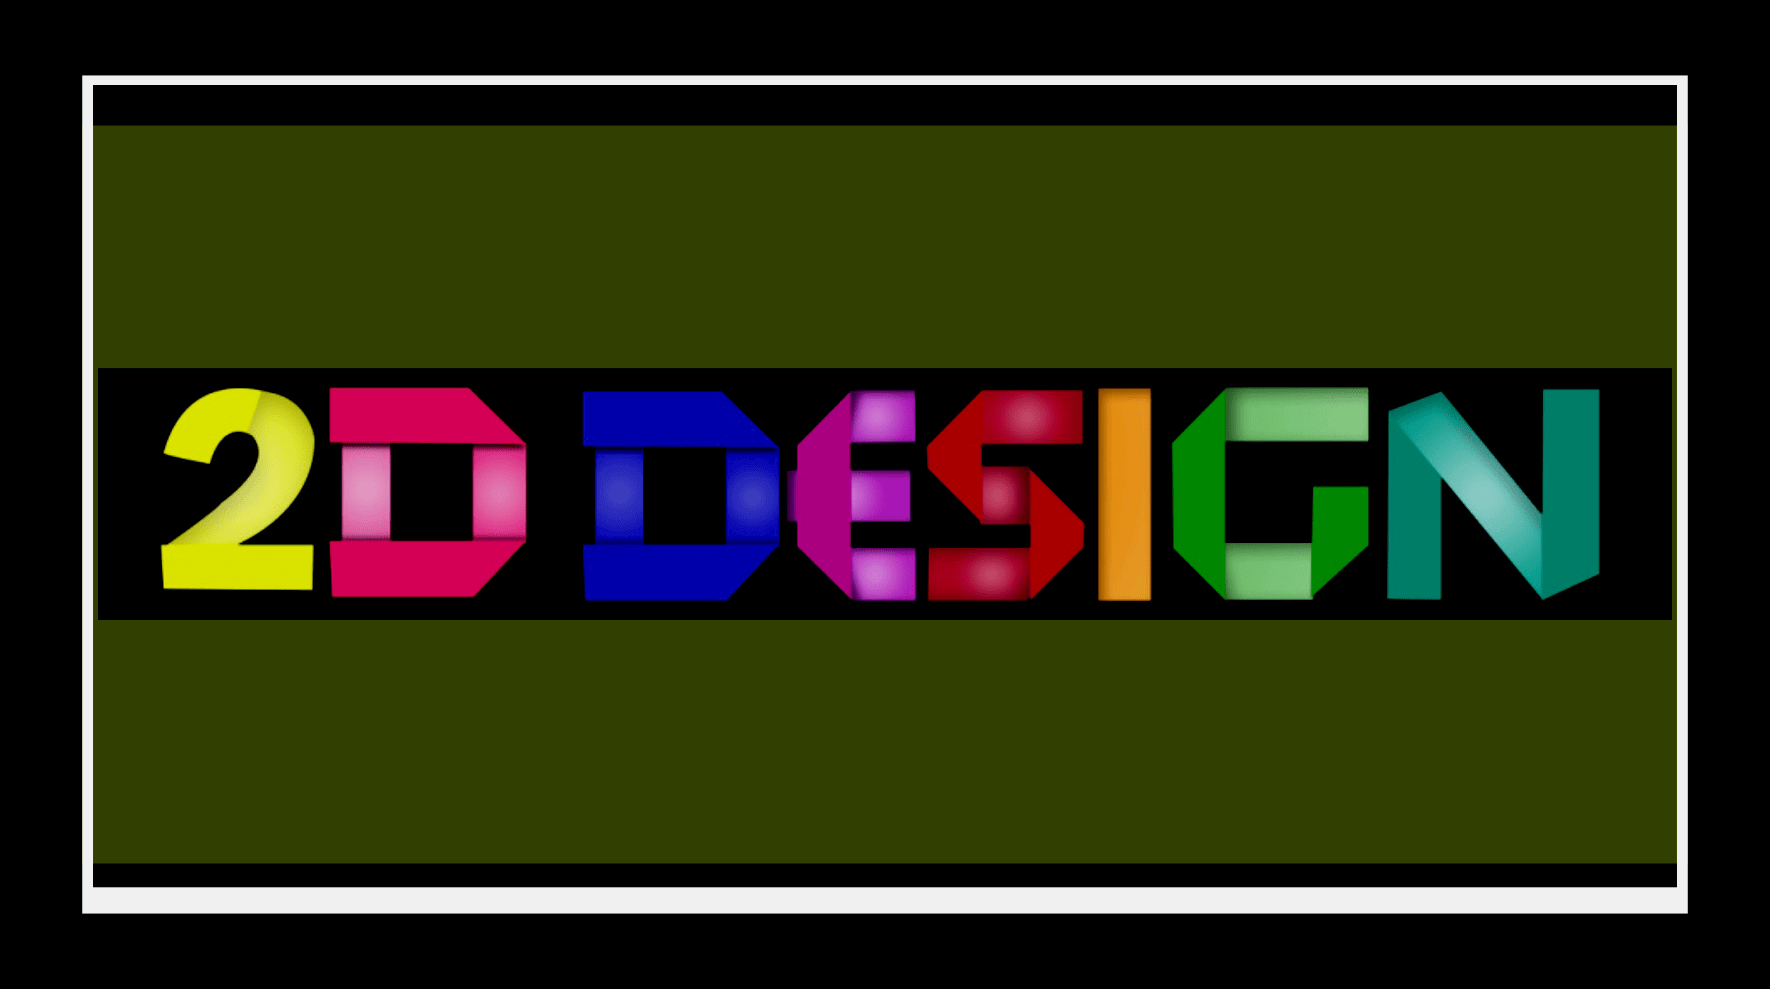 Đến với thiết kế 2D, bạn sẽ được trải nghiệm một dịch vụ thiết kế chuyên nghiệp, đồng thời được tư vấn và hỗ trợ từ những chuyên gia tại đây. Với những sản phẩm thiết kế ấn tượng, bạn sẽ không thể rời mắt khỏi chúng!